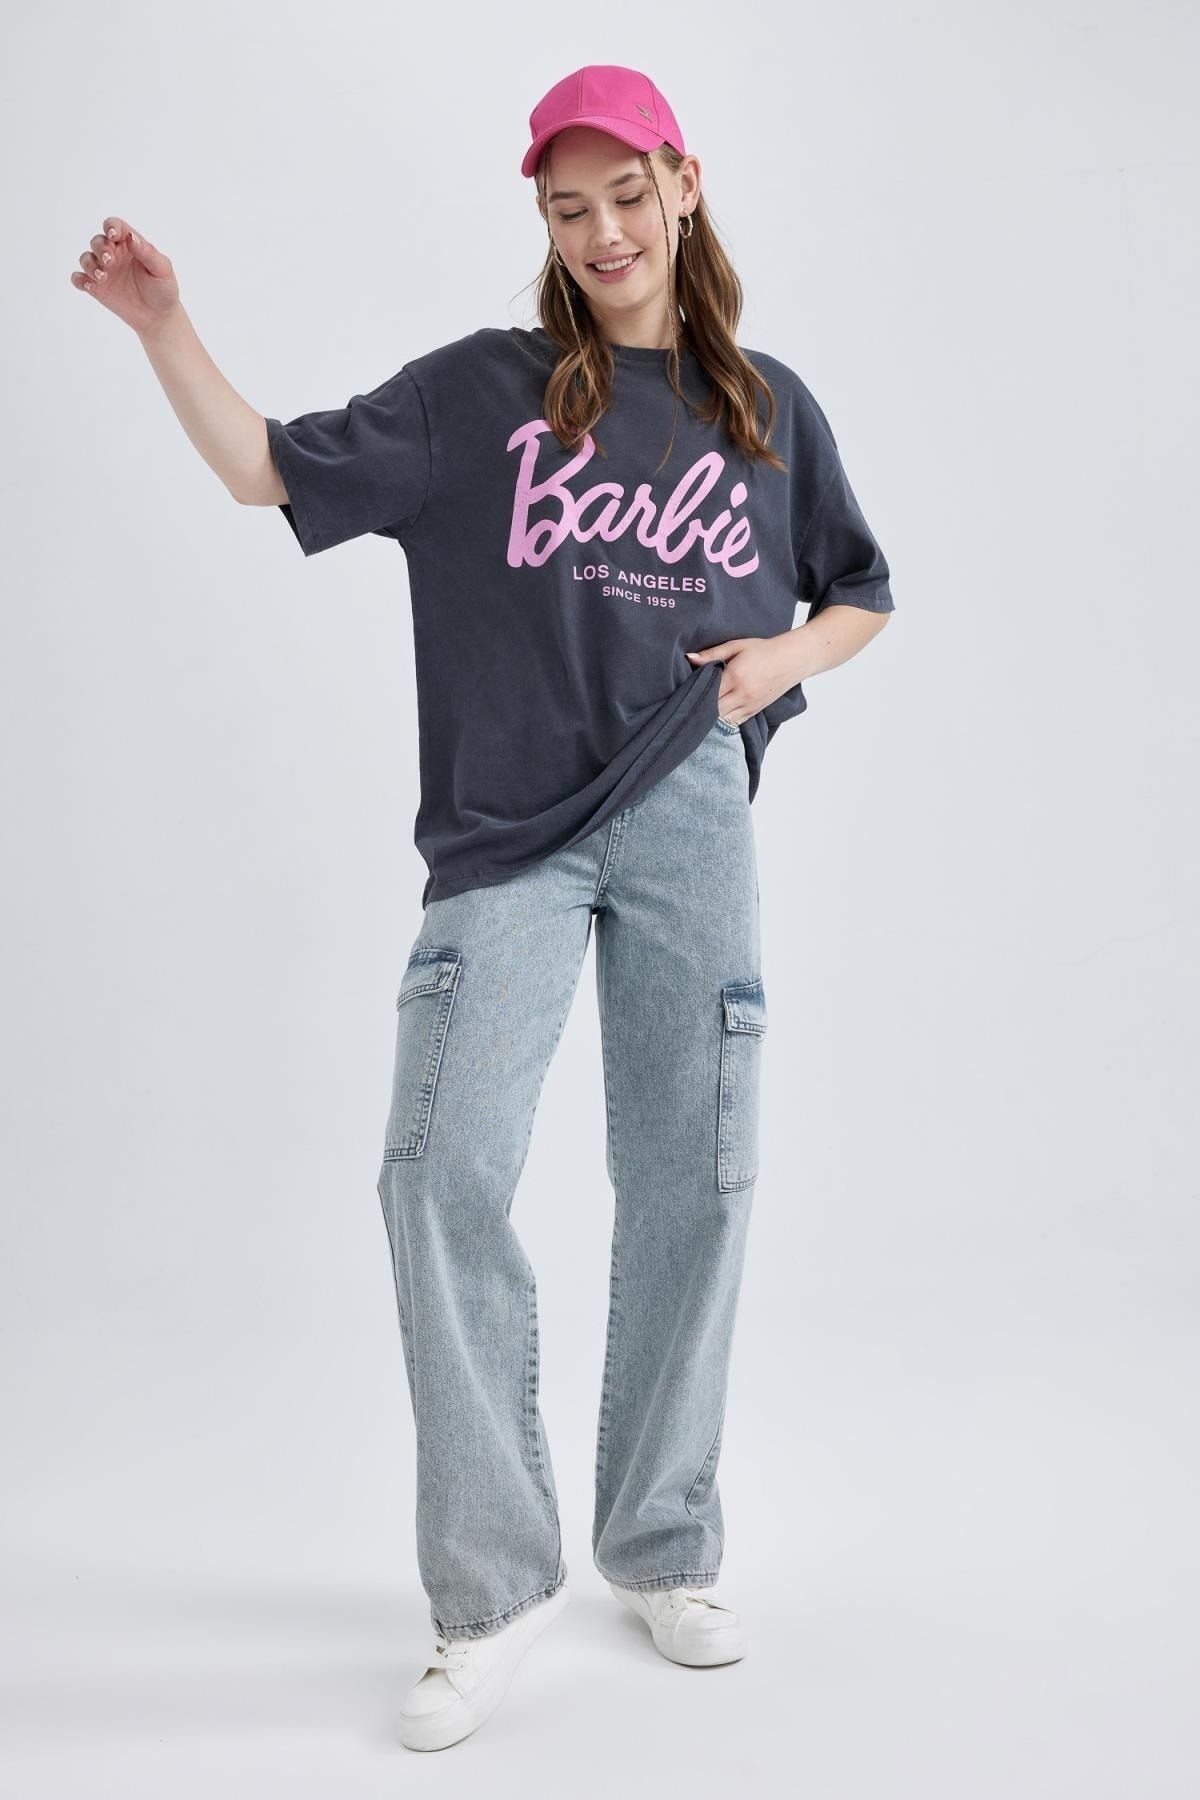 Barbie Damen Bedruckte Langarm-T-Shirt Sweatshirt Pullover